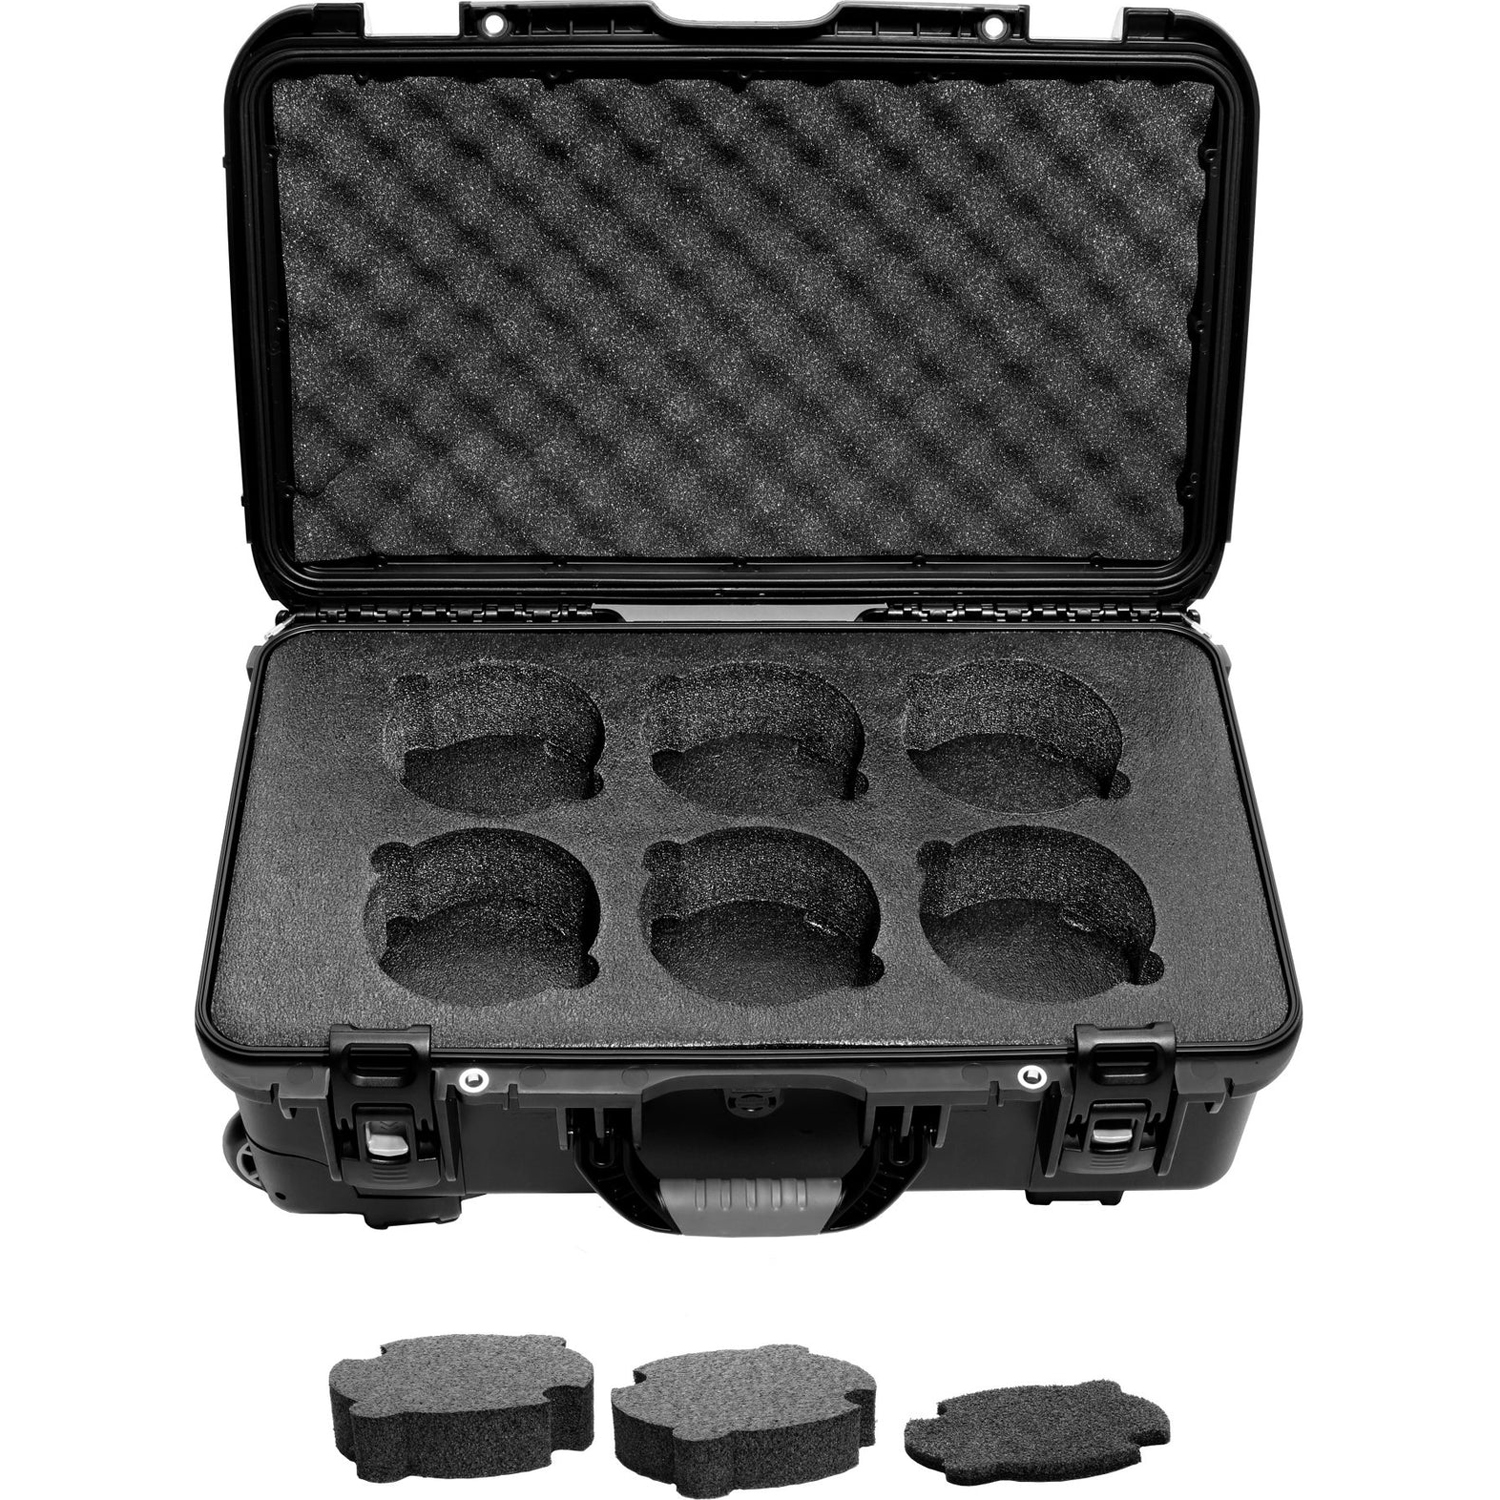 Photos - Camera Bag Rokinon XEEN 6 Lens Carry-on Case XNCASE-CO 